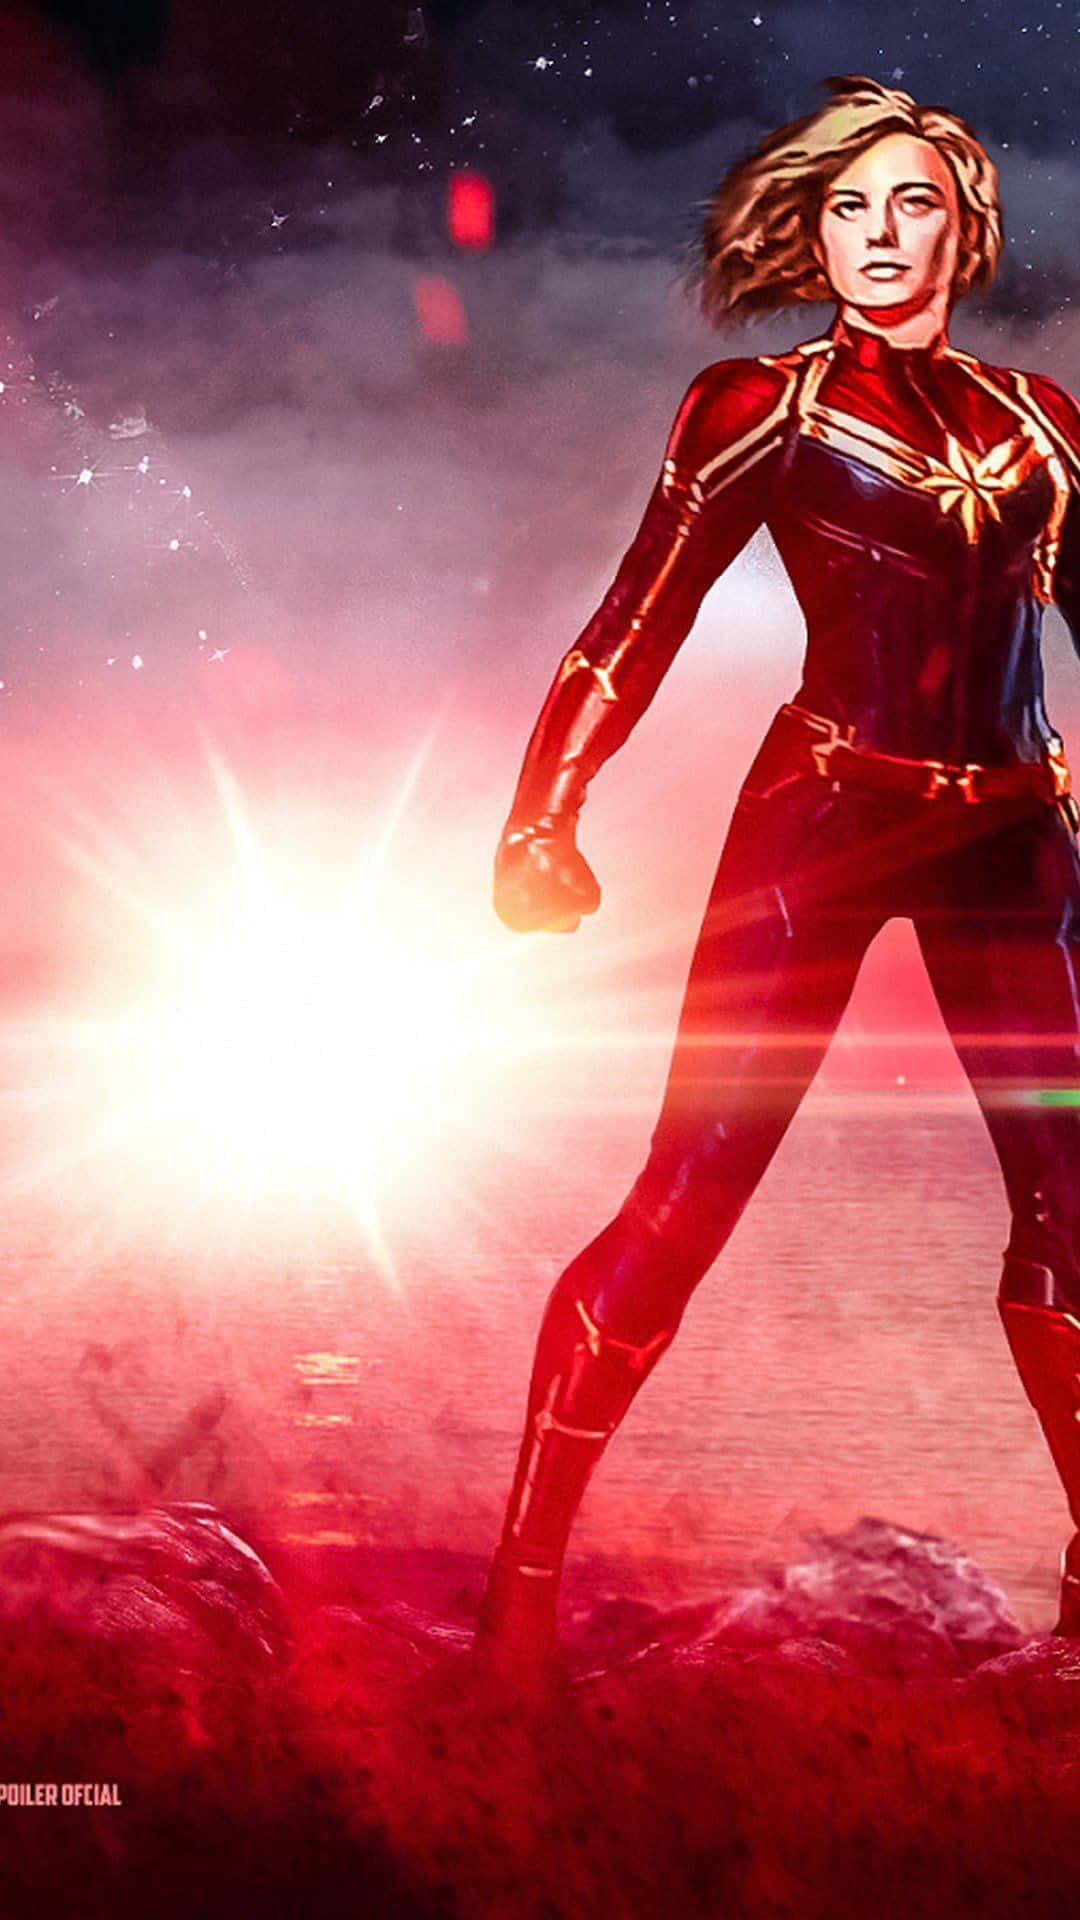 Elpóster En 3d De Edición Limitada De Captain Marvel Para Celebrar El Debut Cinematográfico Del Héroe. Fondo de pantalla